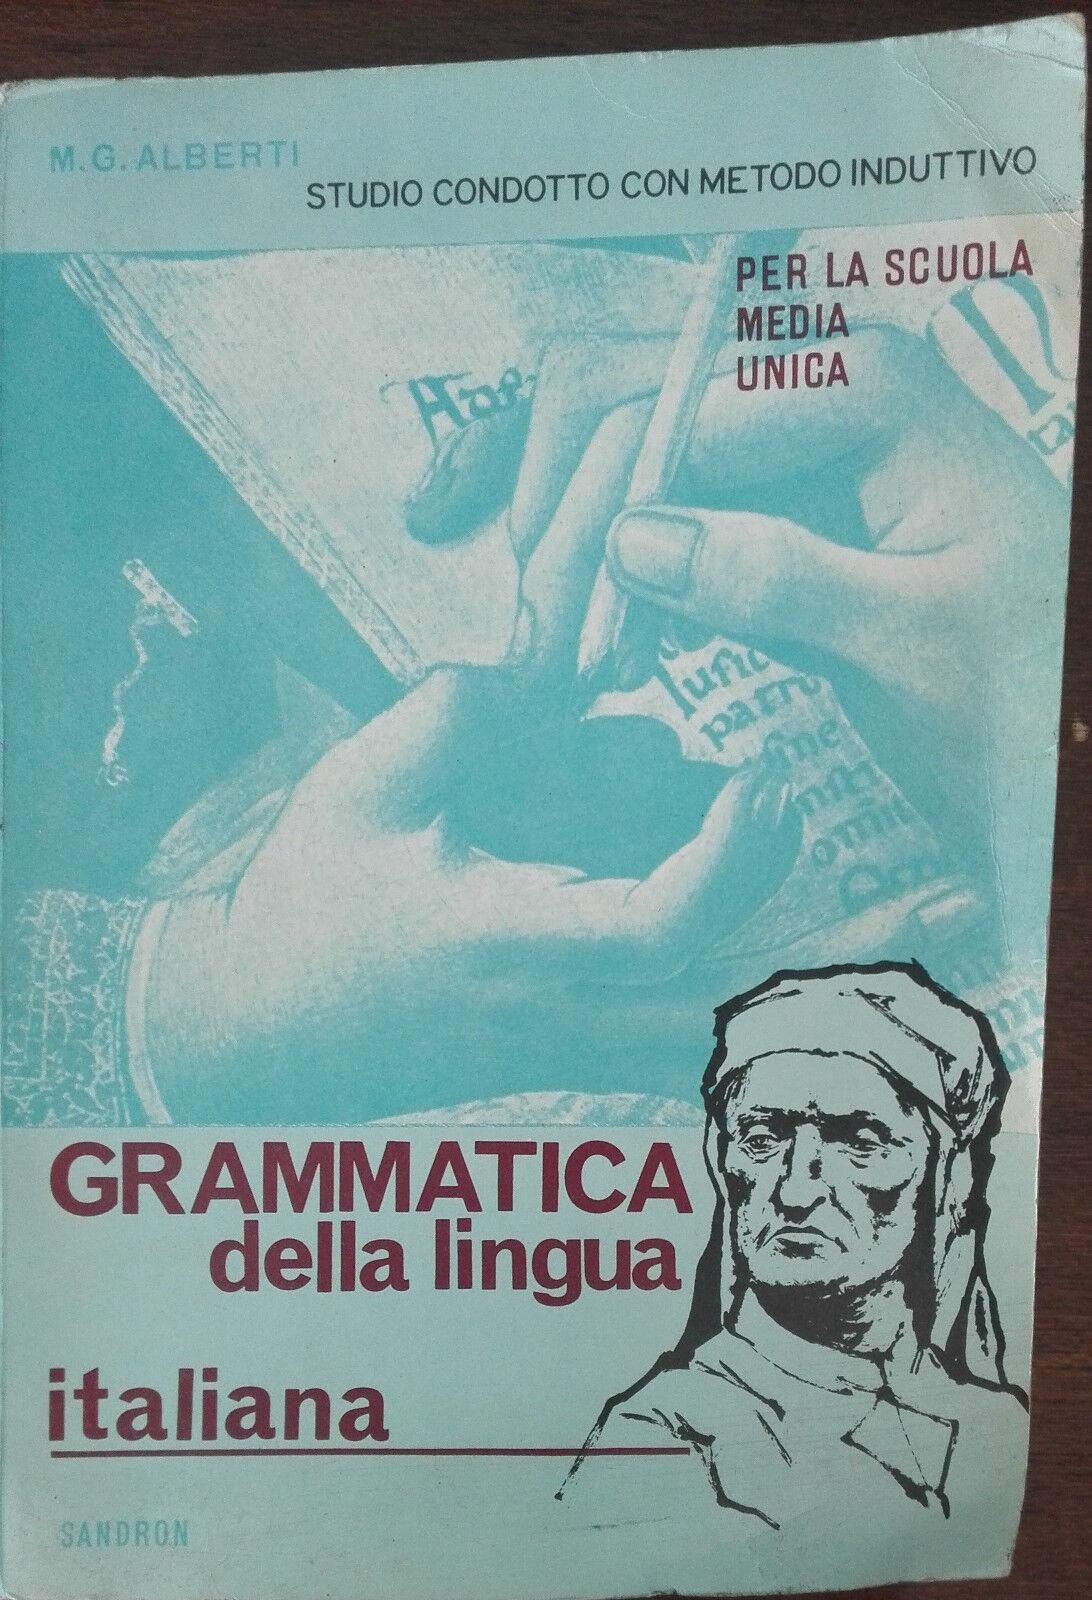 Grammatica della lingua italiana - M. G. Alberti - Sandron,1964 - A